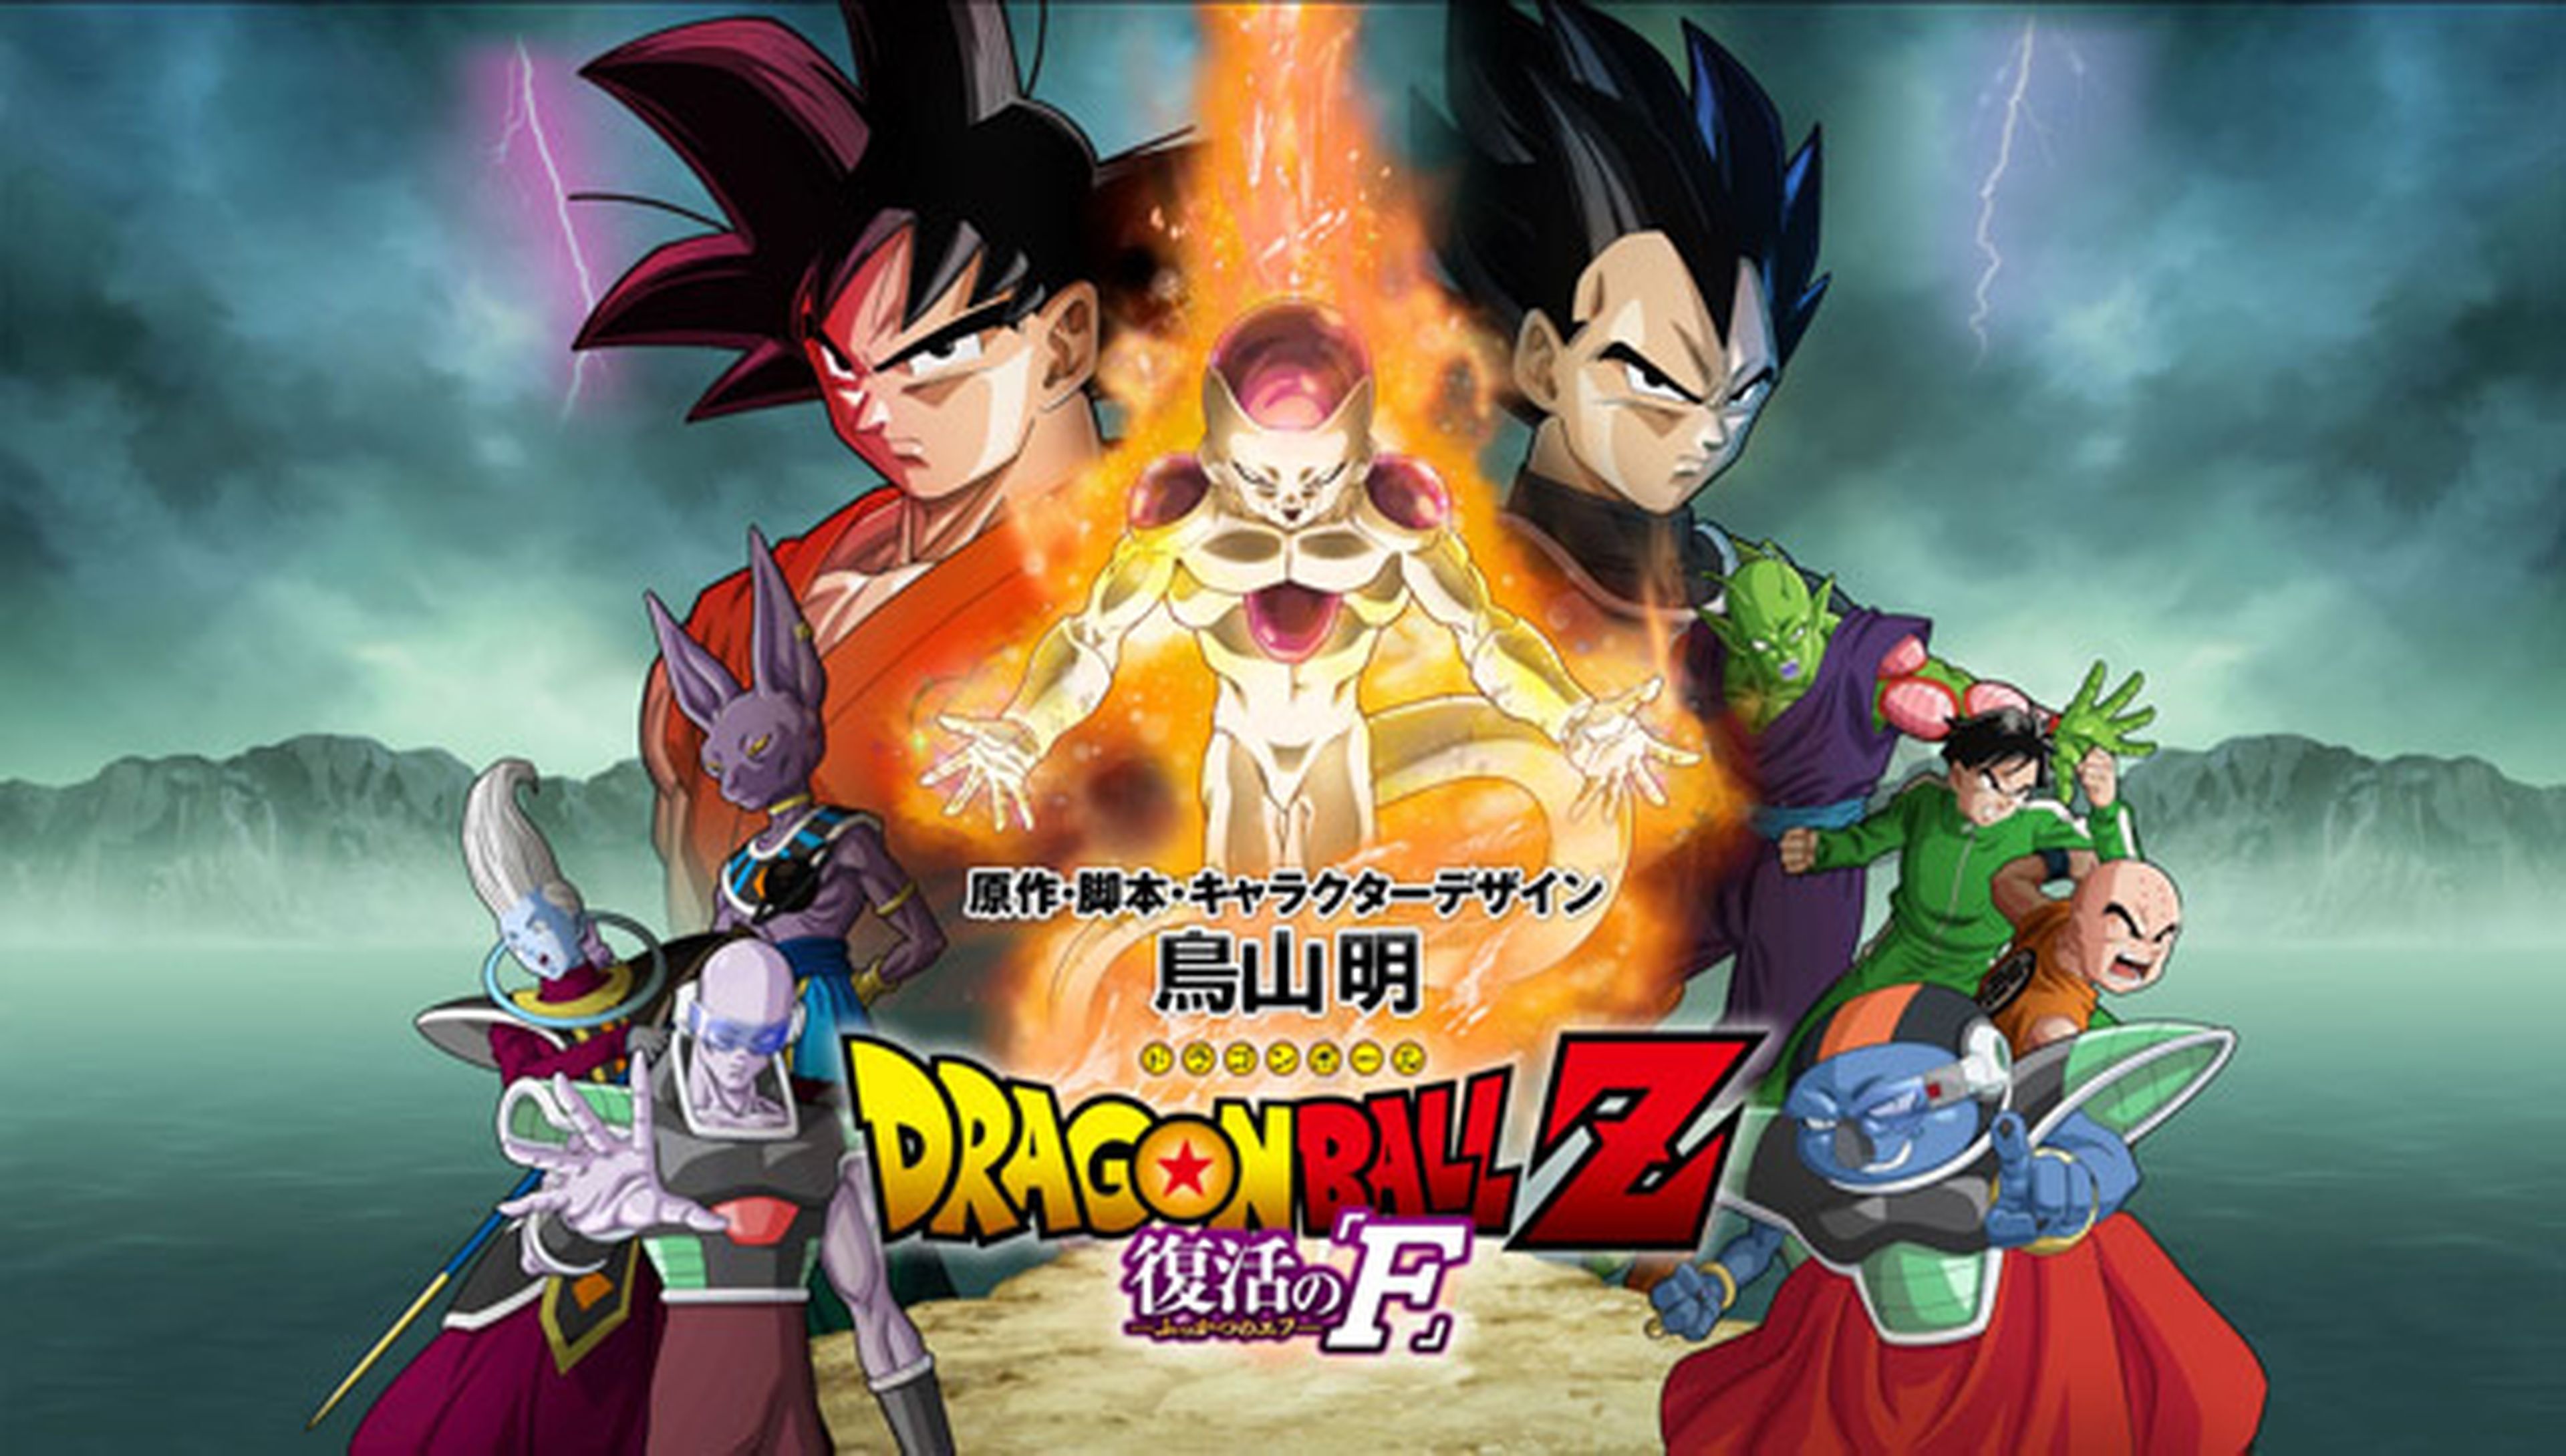 Dragon Ball Z: Fukkatsu no F recauda más que Battle of Gods